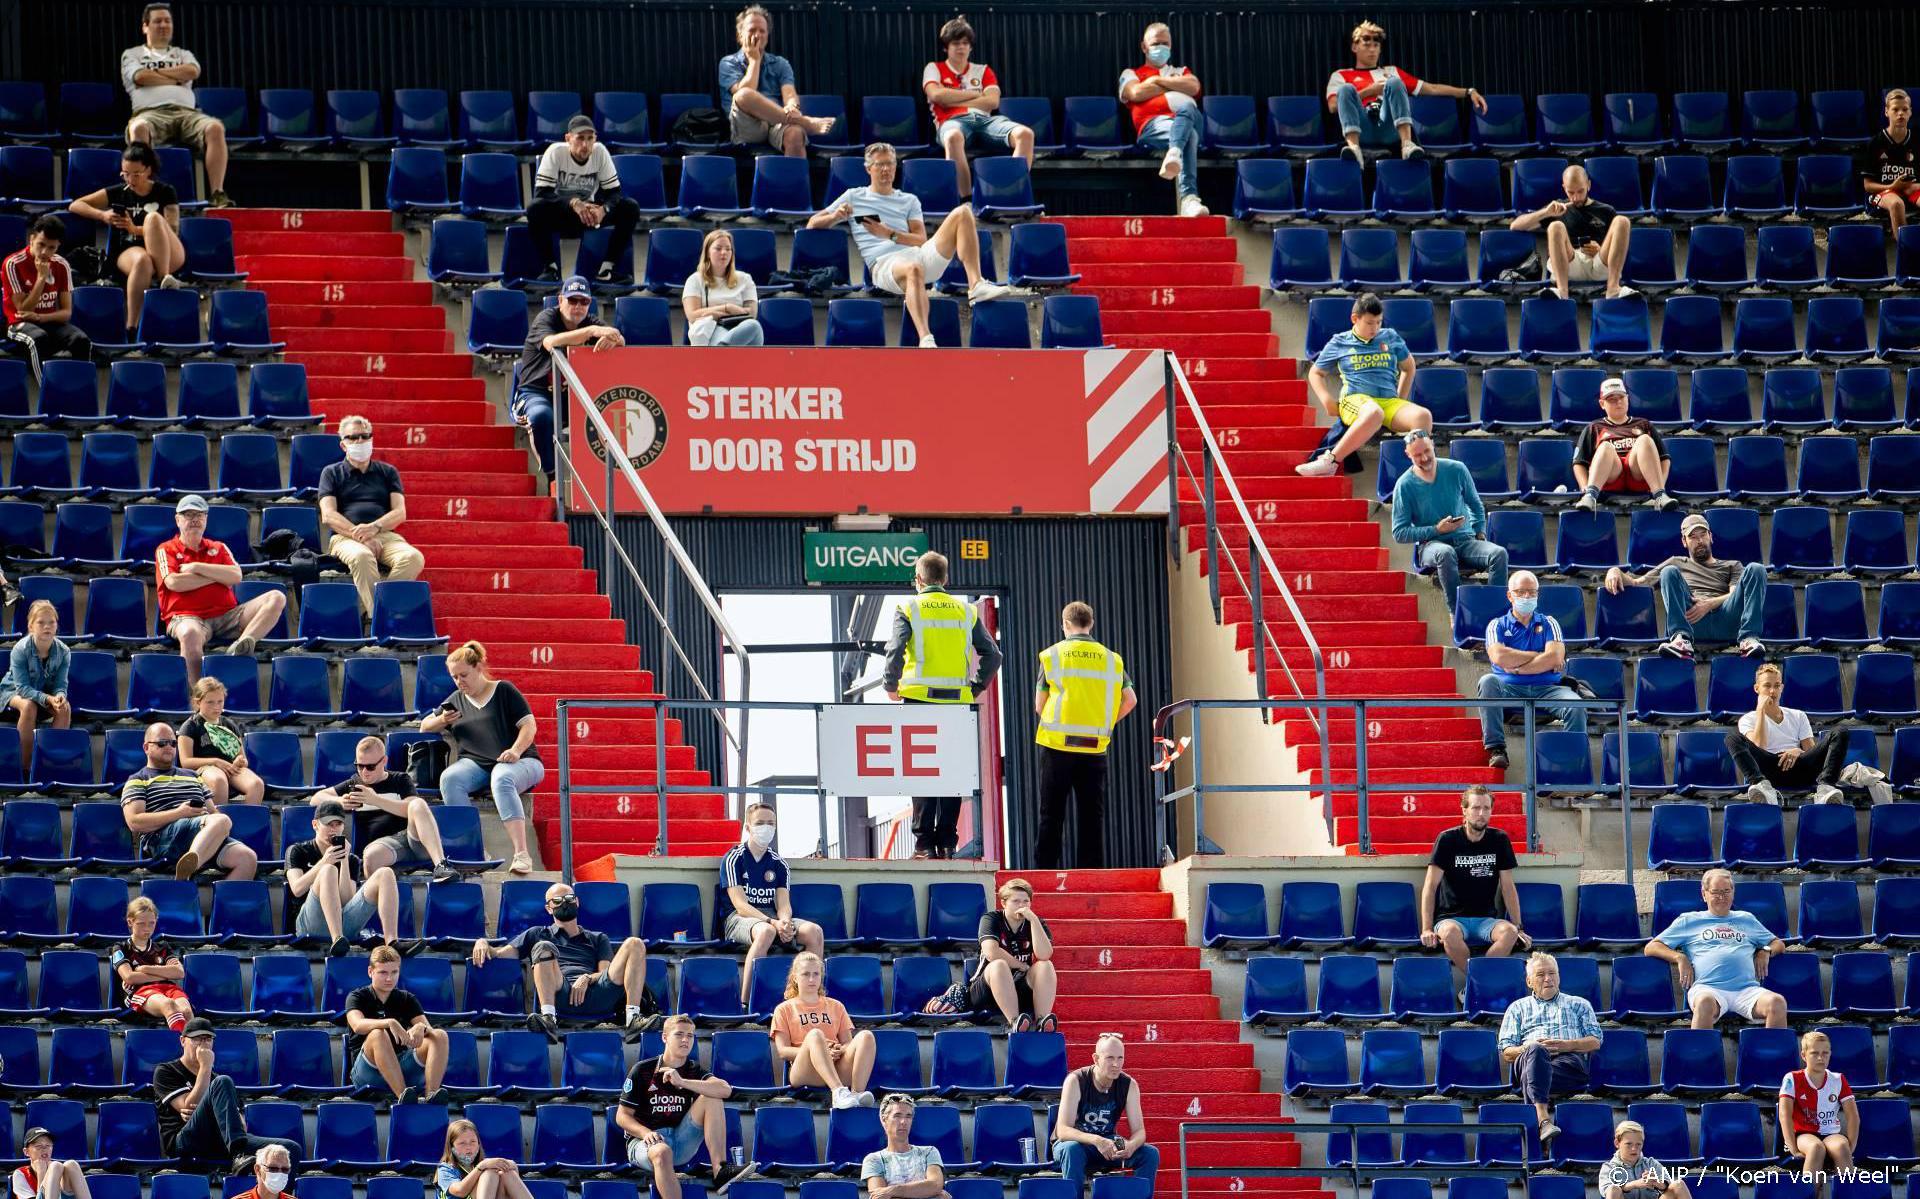 Premier Rutte: burgemeesters mogen fans bij voetbal verbieden